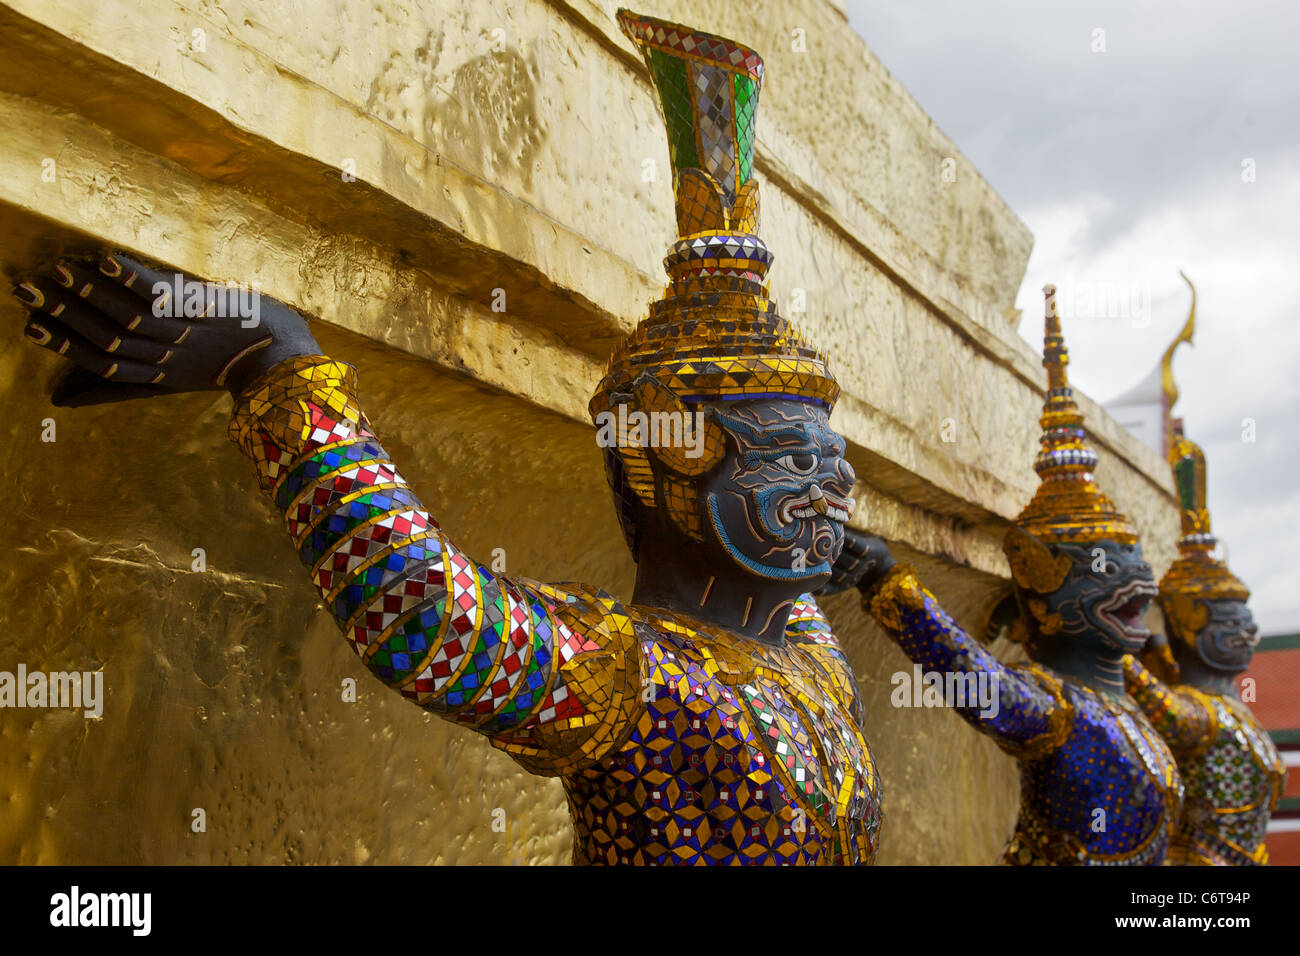 Mythical figures at the Royal Palace, Bangkok, Thailand Stock Photo